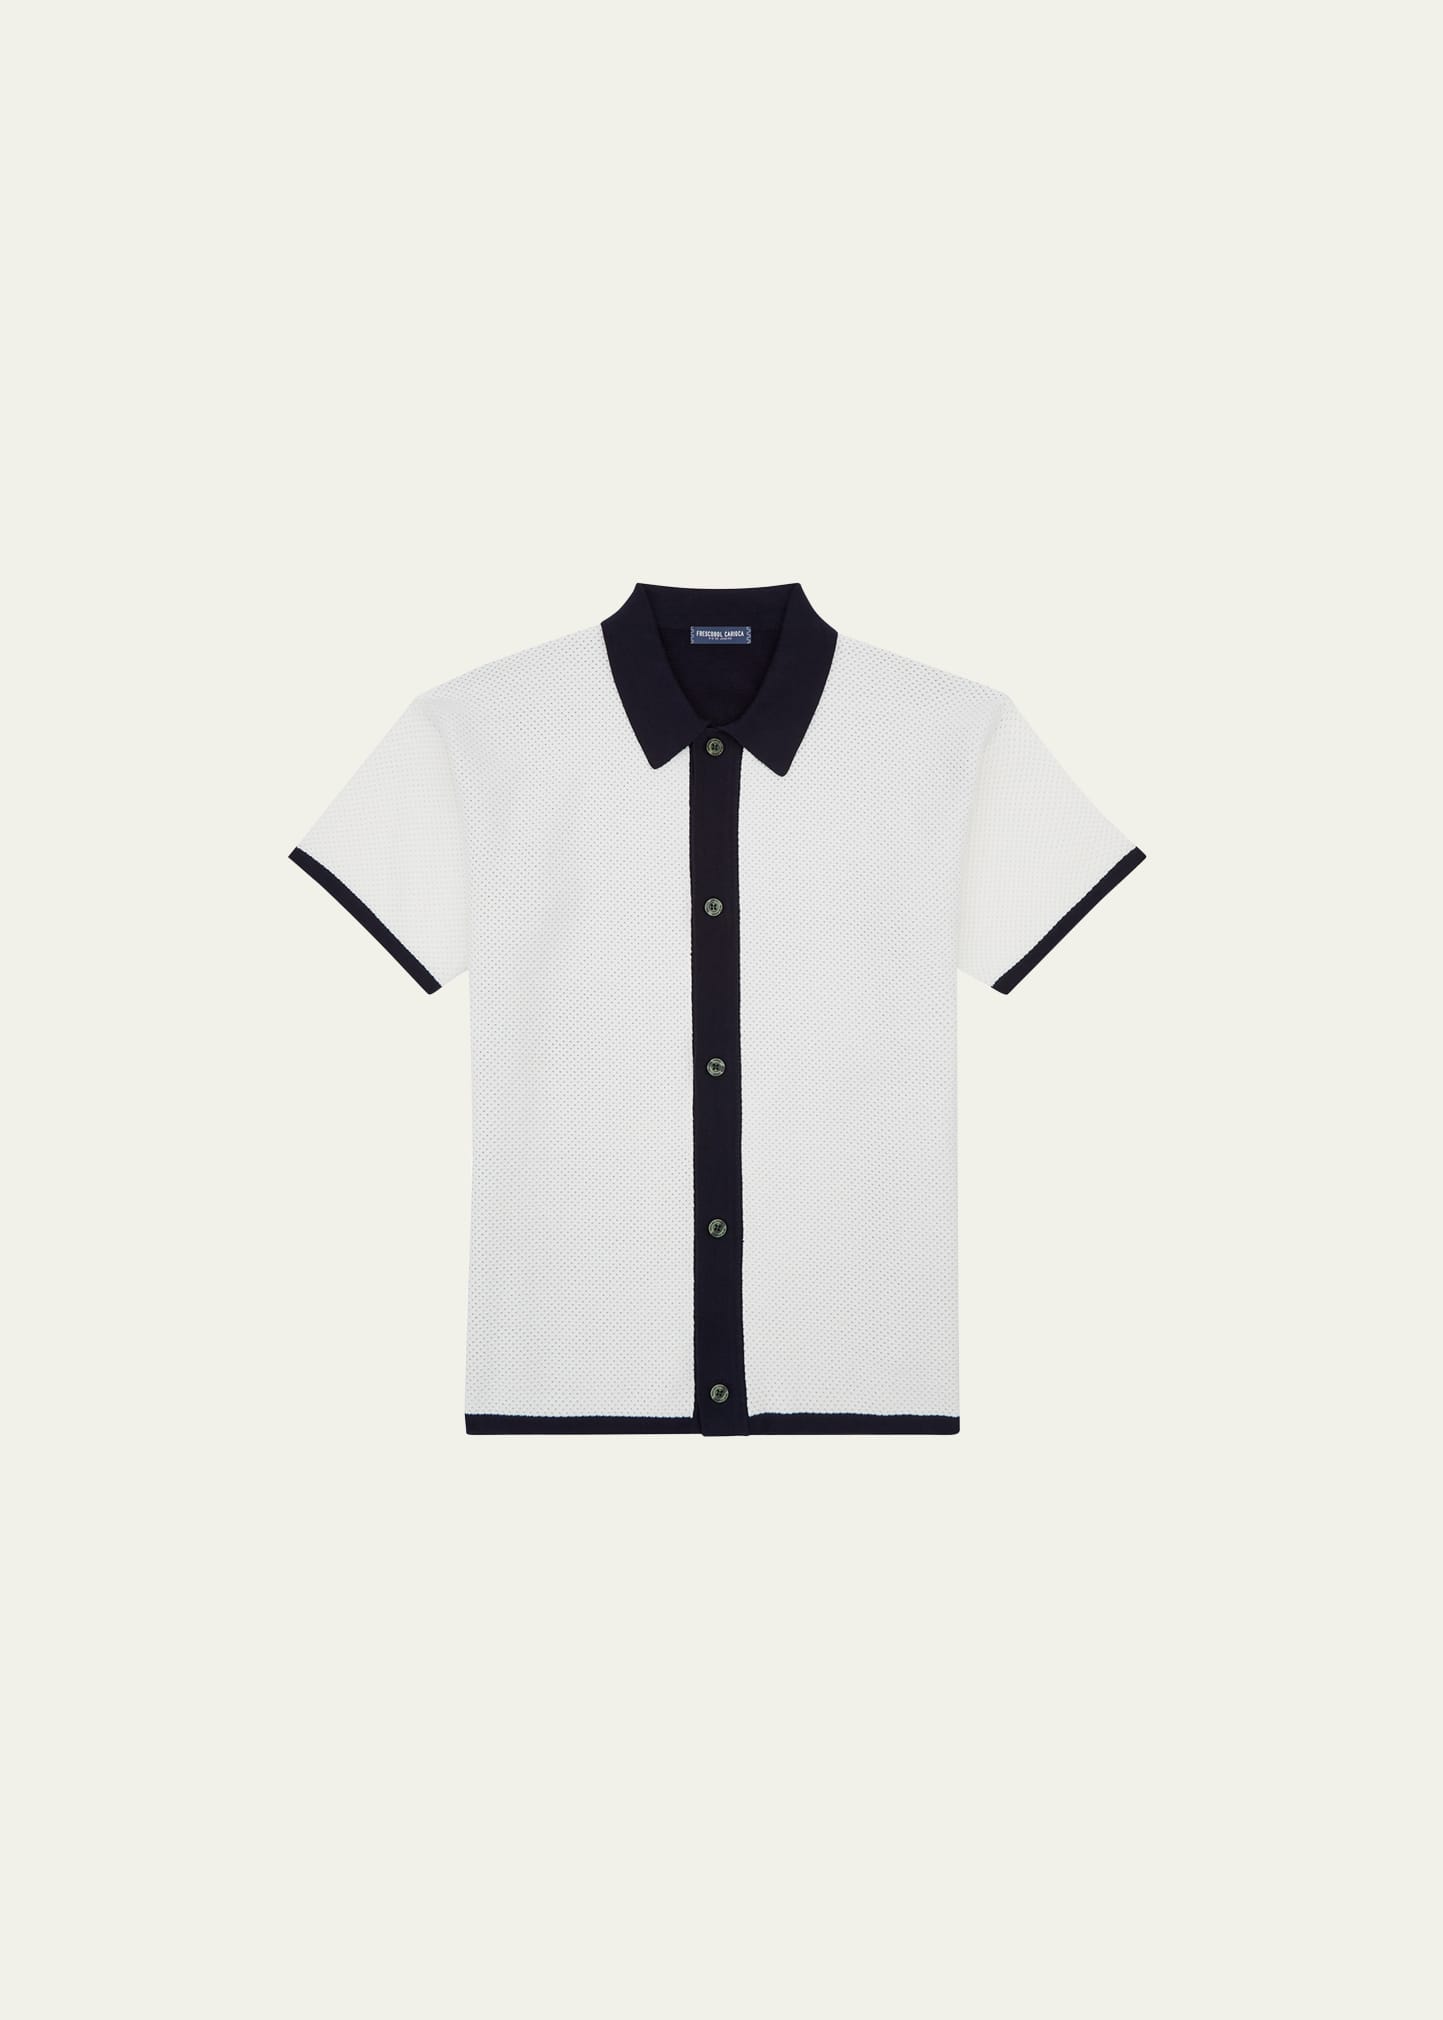 Frescobol Carioca Men's Bicolor Mesh Button-down Shirt In Cotton White/navy